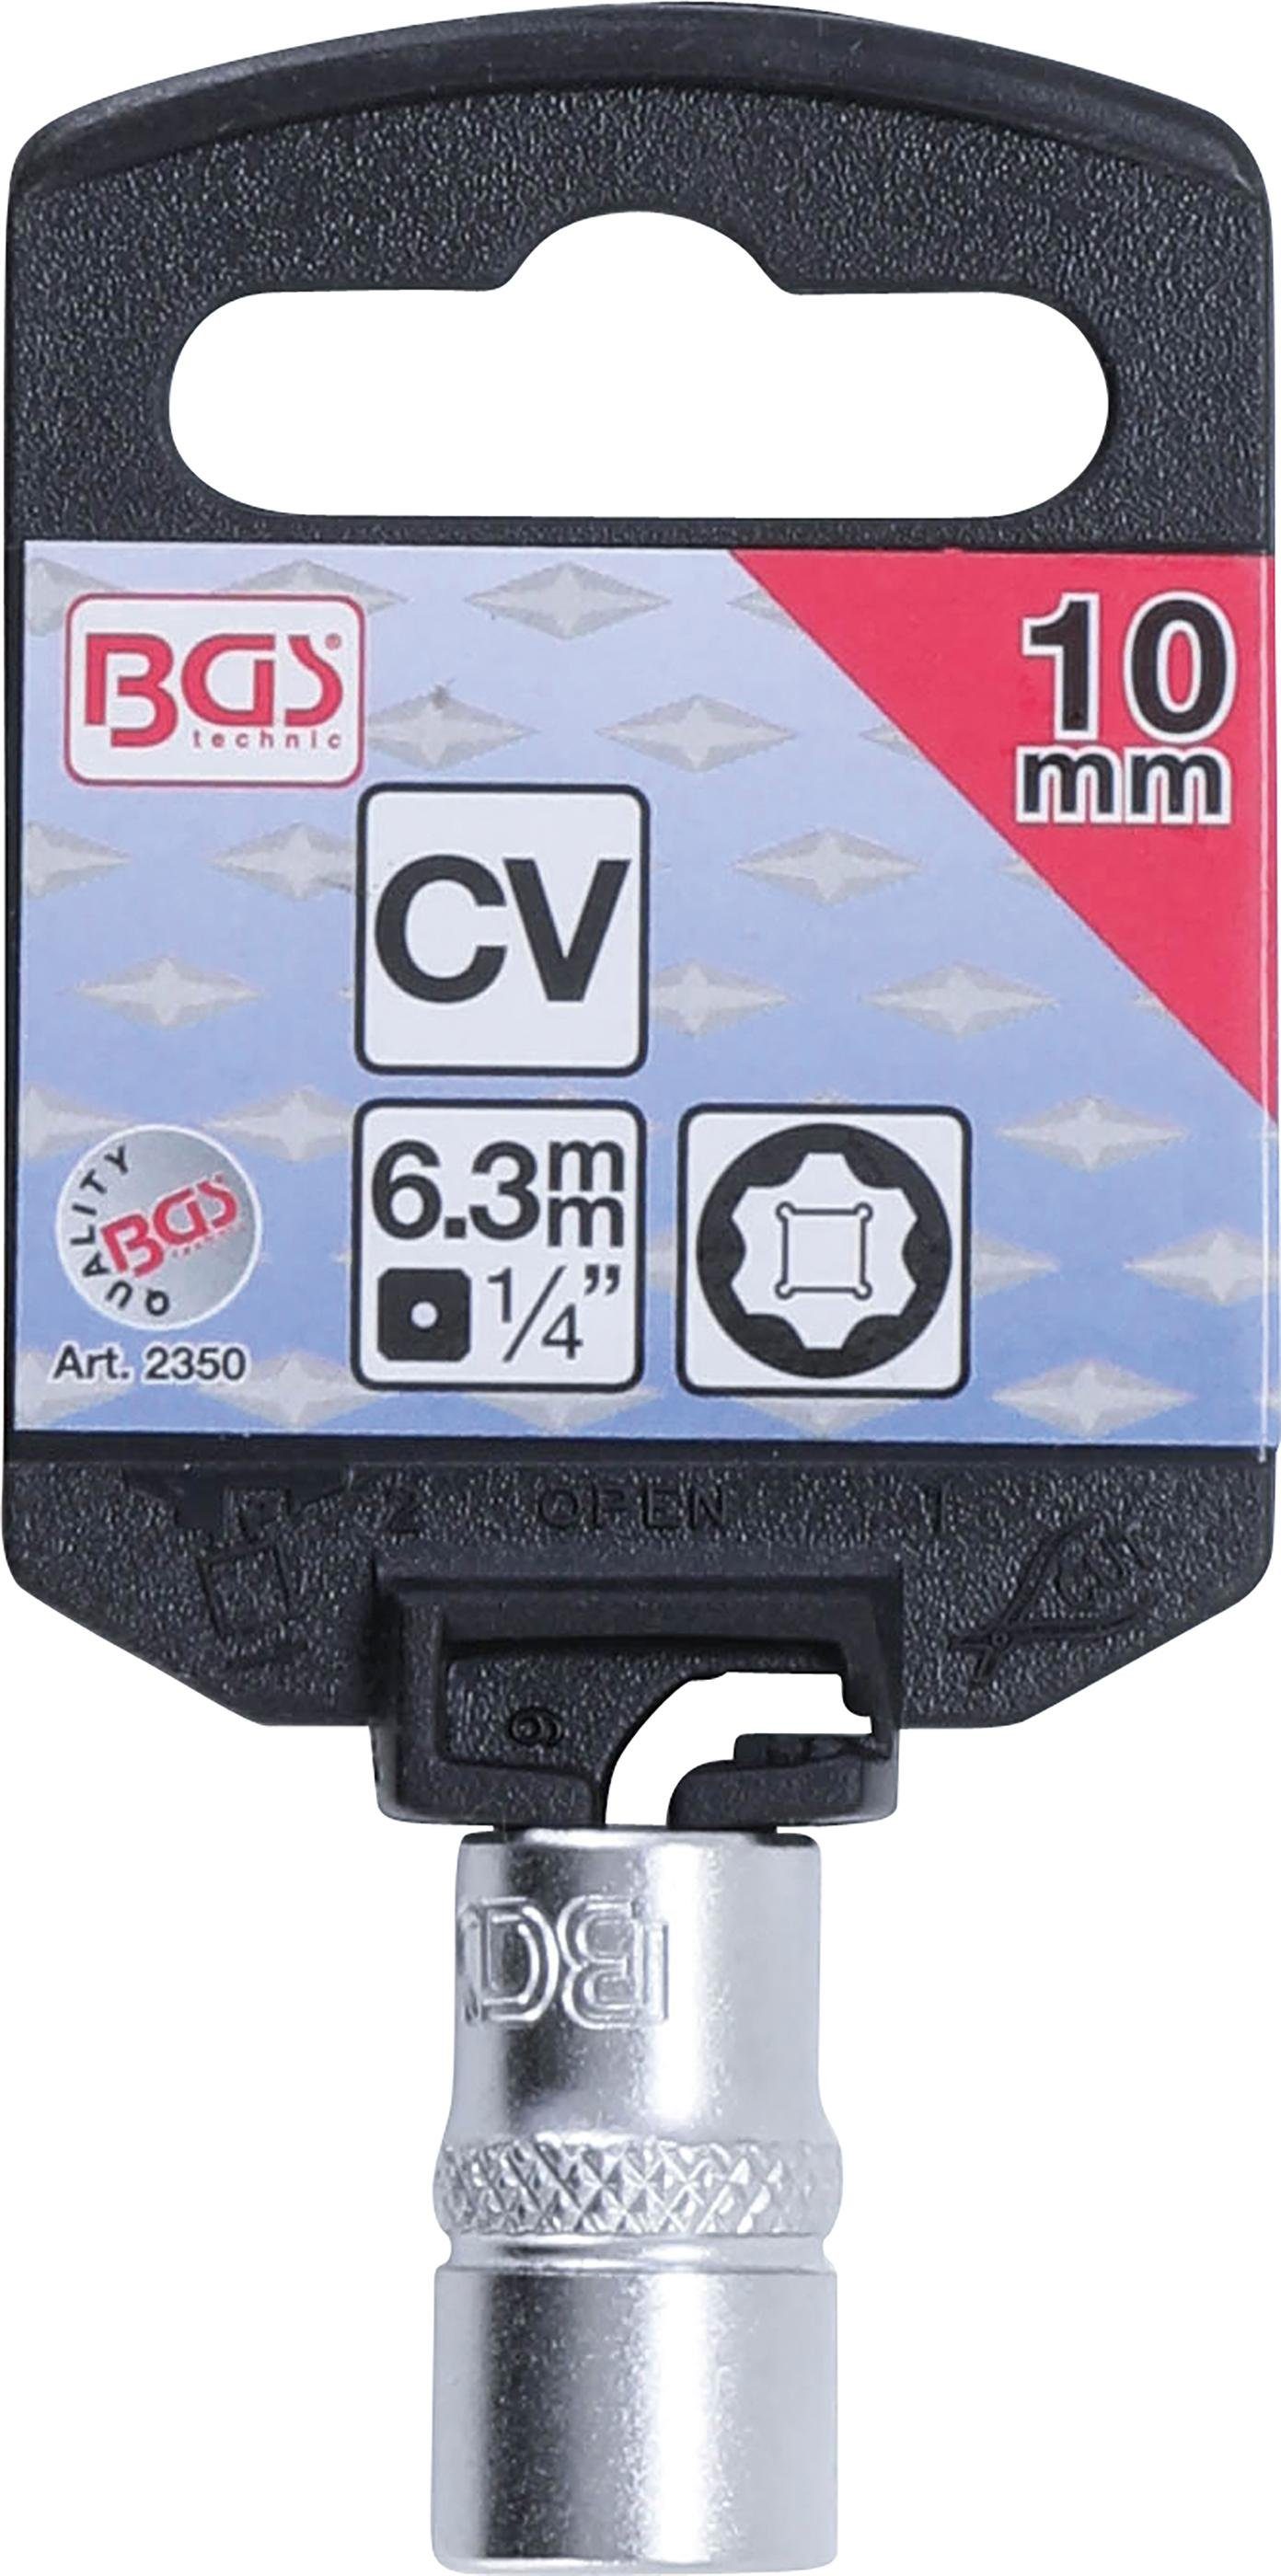 6,3 10 BGS Innenvierkant (1/4), mm Steckschlüssel-Einsatz Lock, SW Stecknuss Super Antrieb mm technic